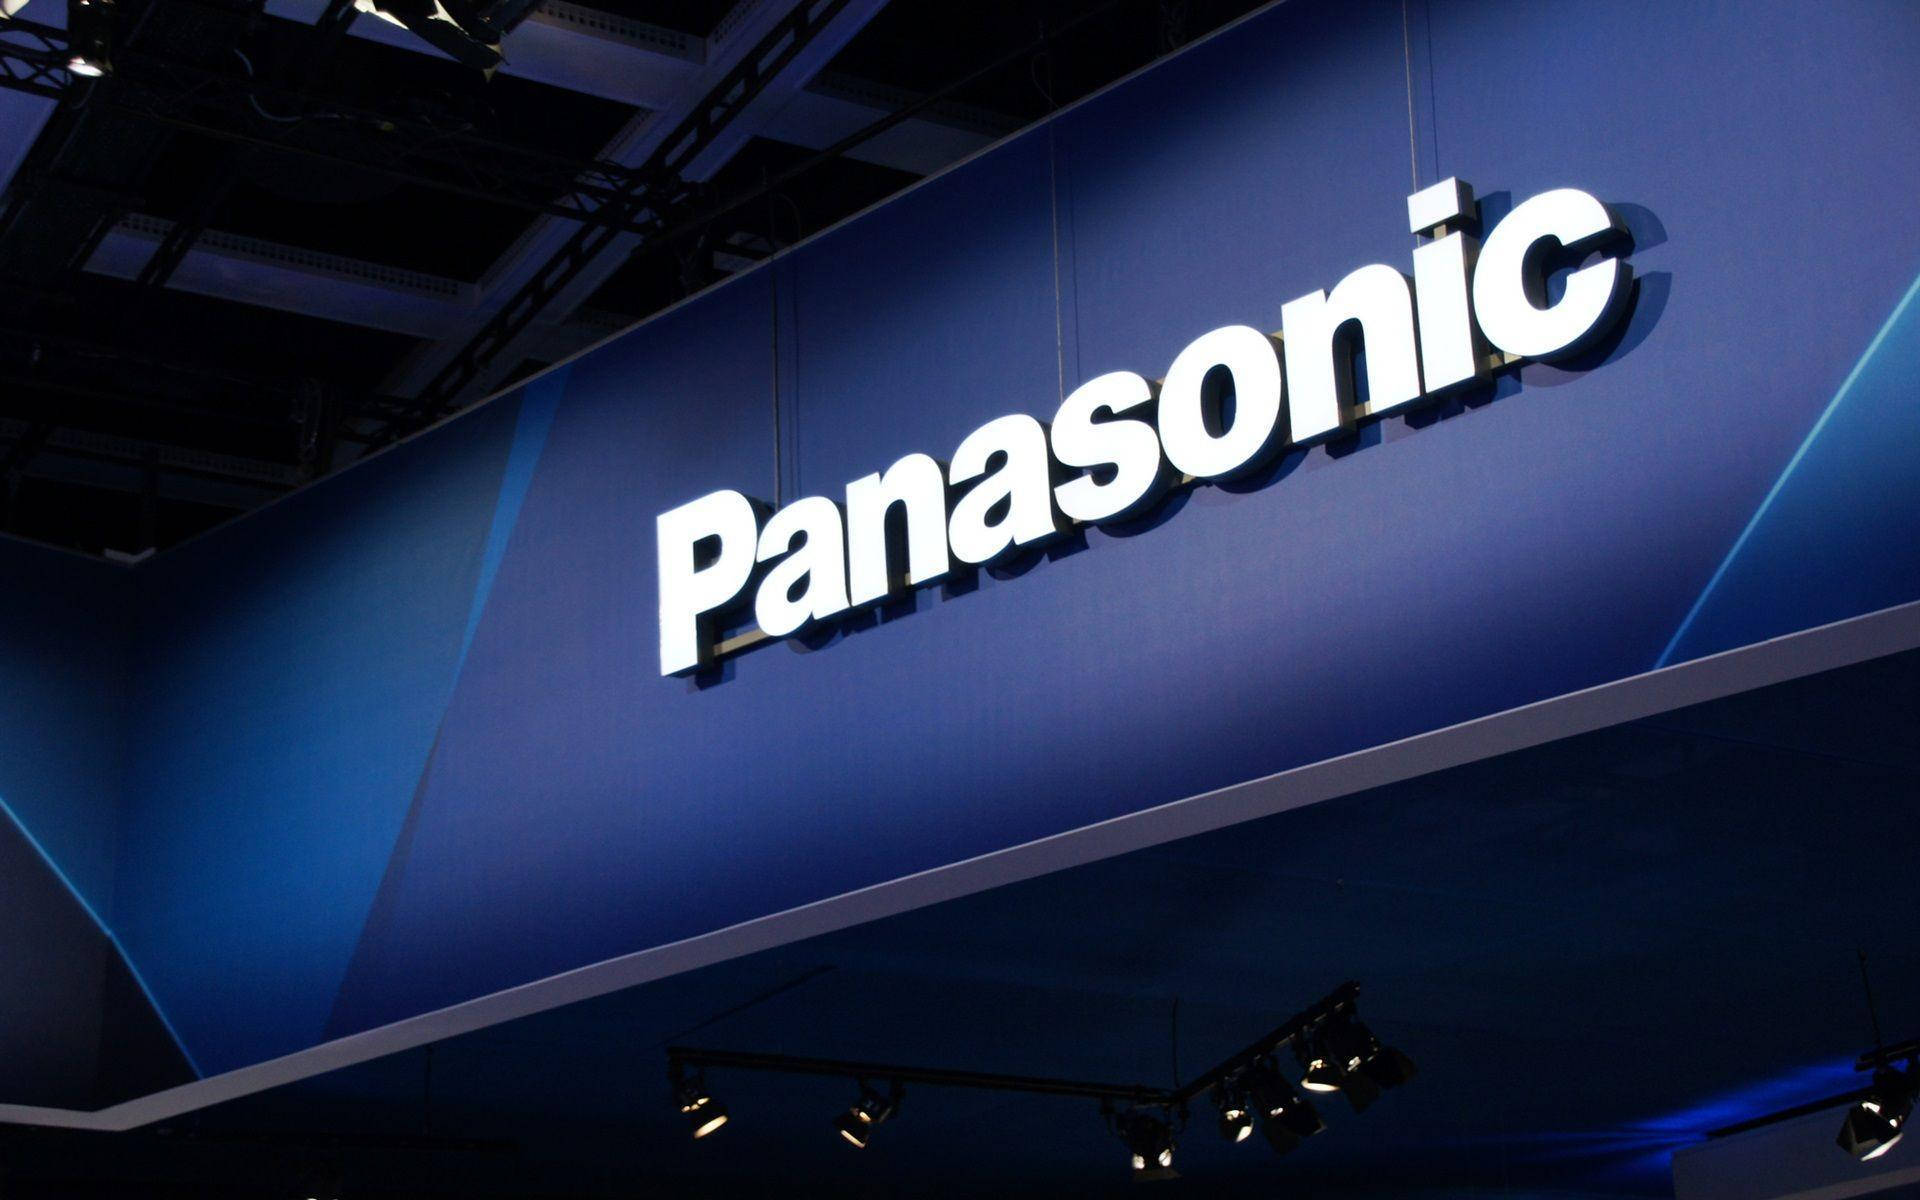 Facciata Panasonic In Blu Sfondo